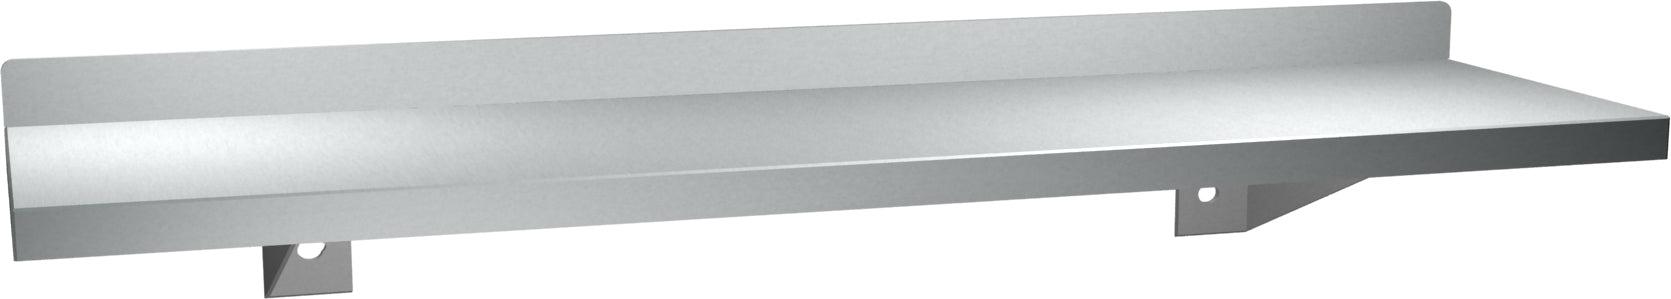 ASI 0694-24 Shelf With Backsplash, Stainless Steel, 5 X 24 Inch